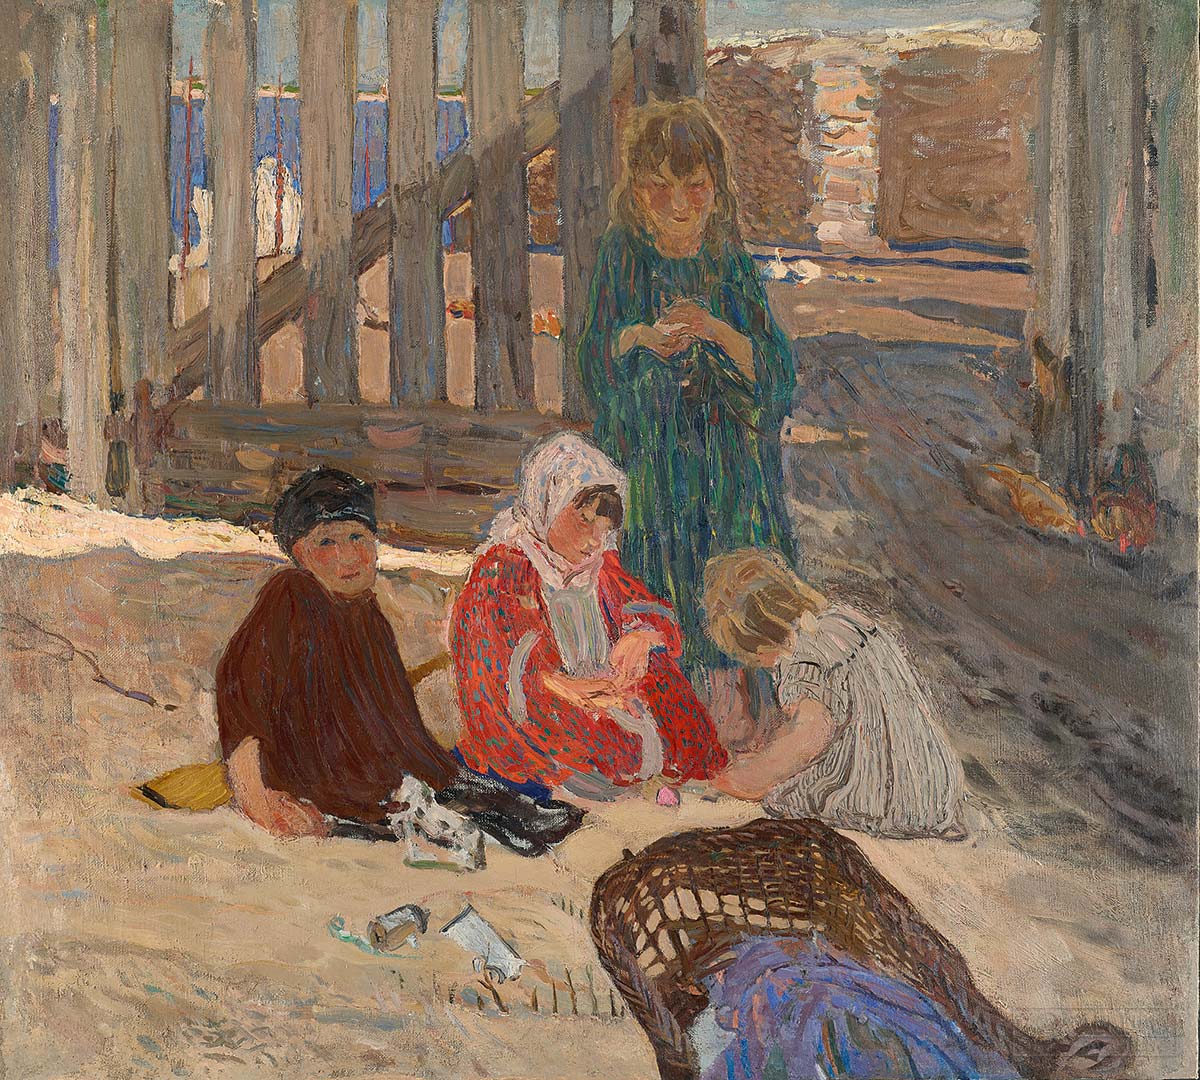 Савинов А. Дети, играющие в песке. 1904. Государственная Третьяковская галерея